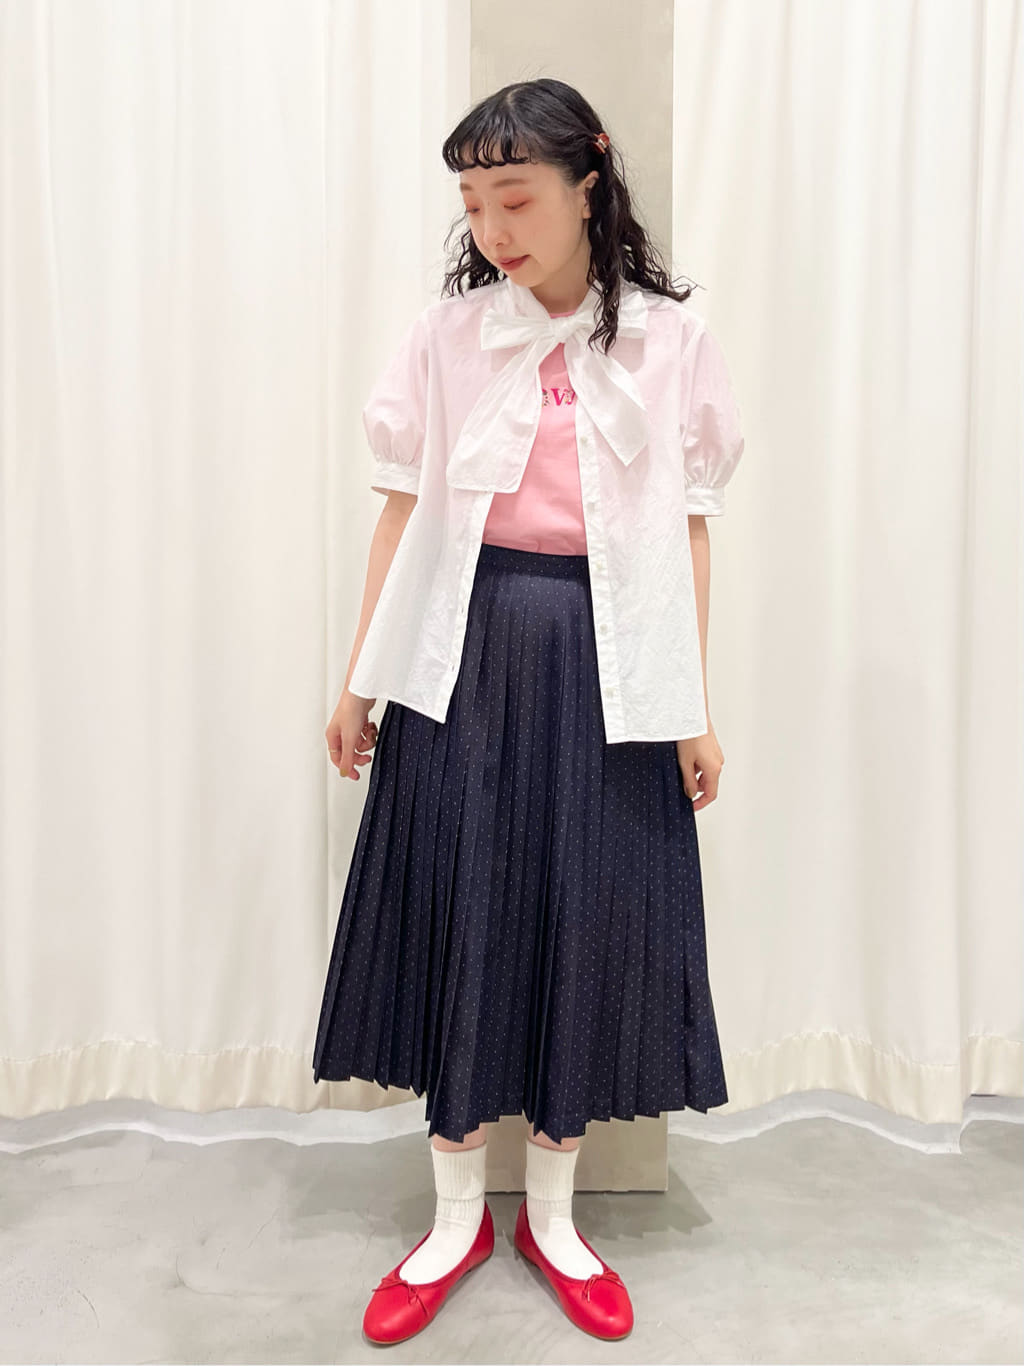 CHILD WOMAN CHILD WOMAN , PAR ICI 新宿ミロード 身長：157cm 2022.05.26